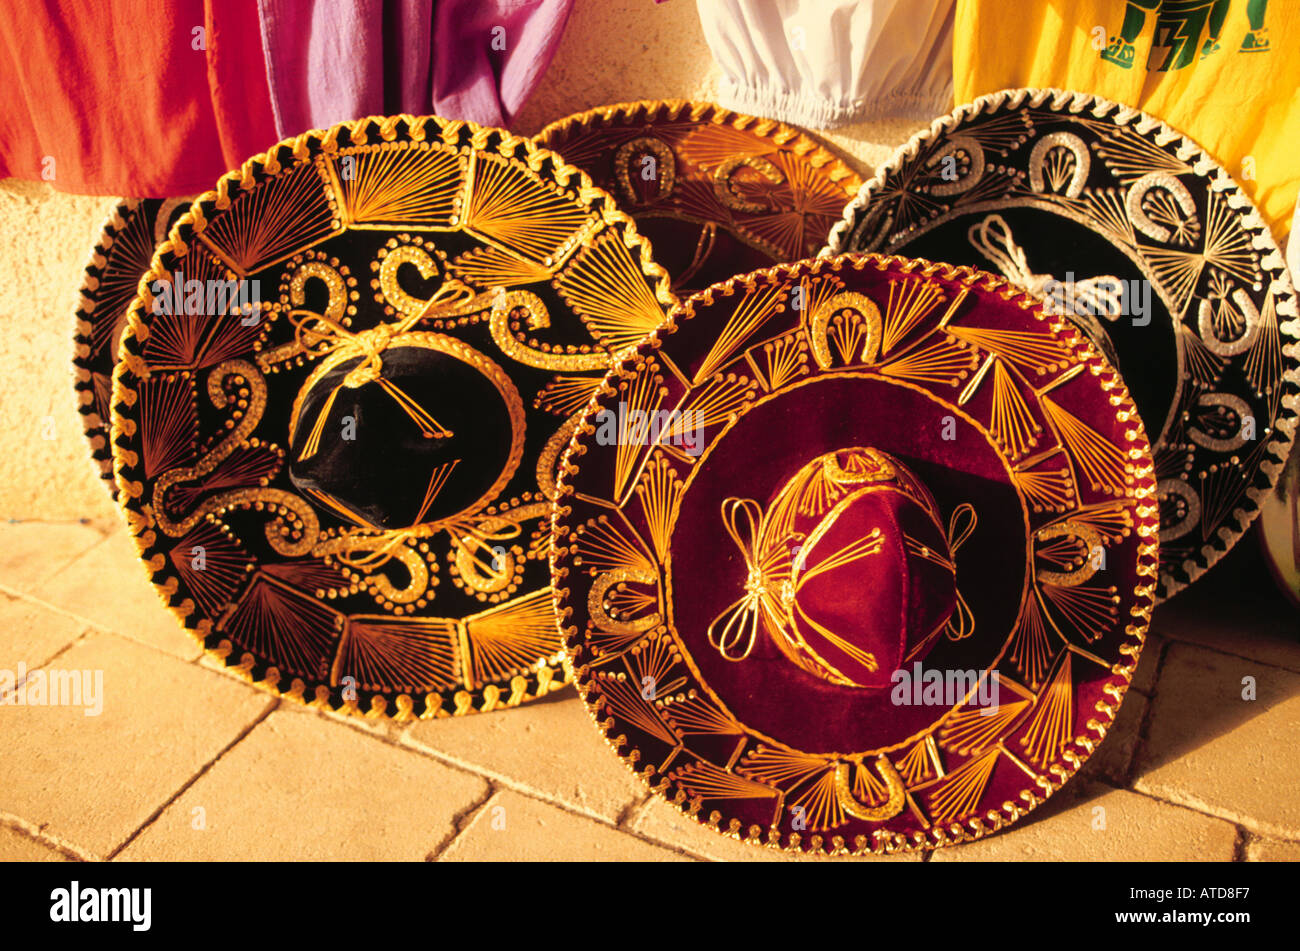 Sombreros mexicains brodé orné Banque D'Images